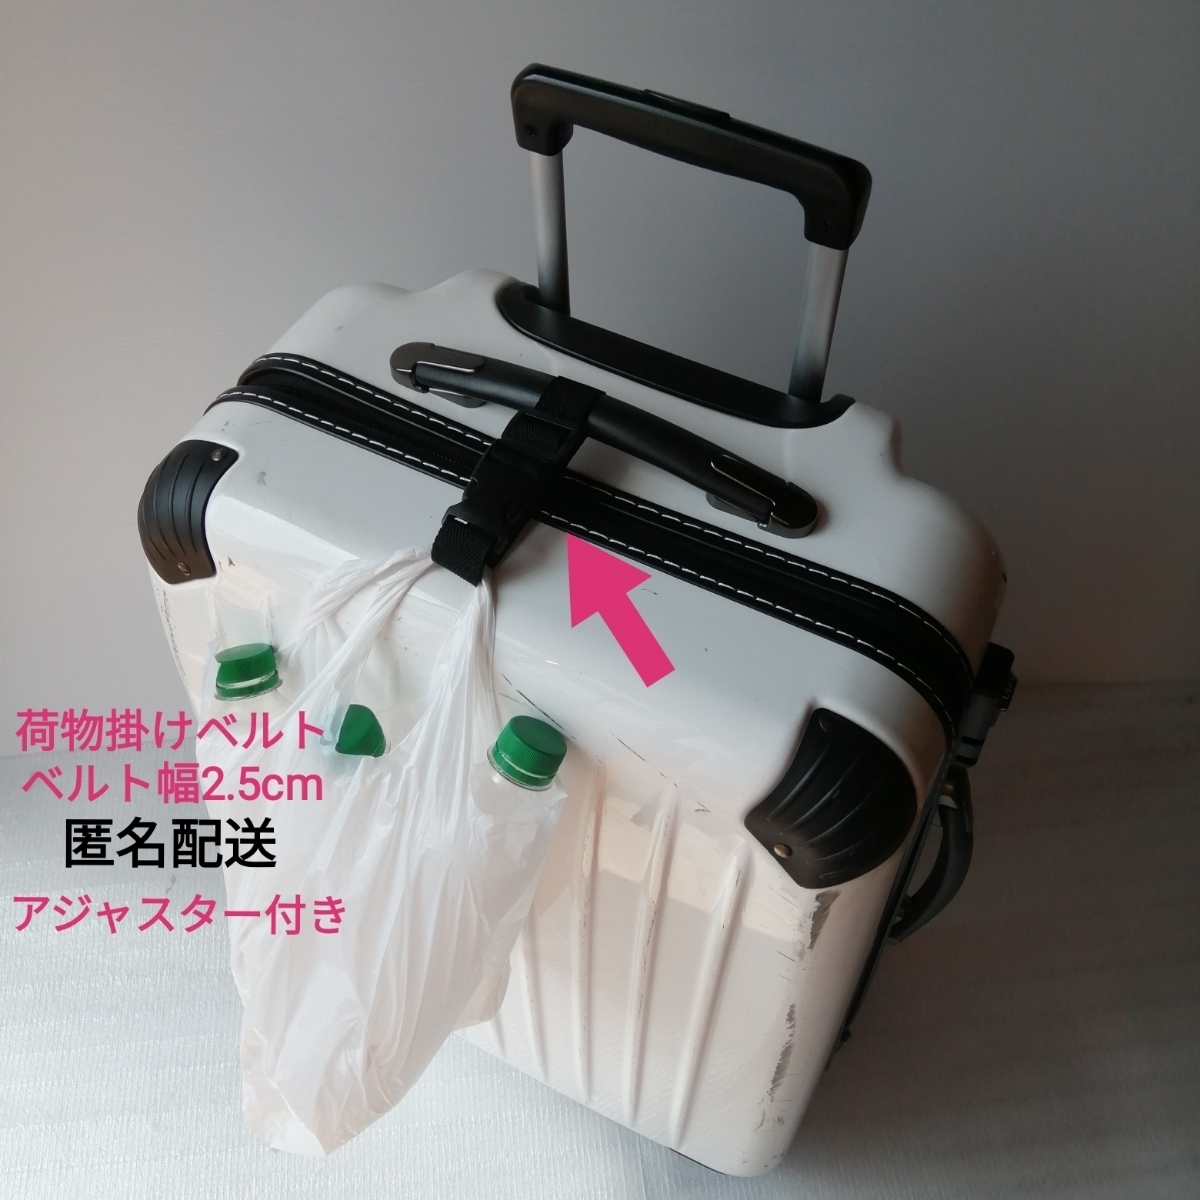 黒(薄め)ベルト幅2.5cm★手荷物掛けベルト★スーツケース ベビーカー キャリーバッグ キャリーケース 旅行バッグ 鞄